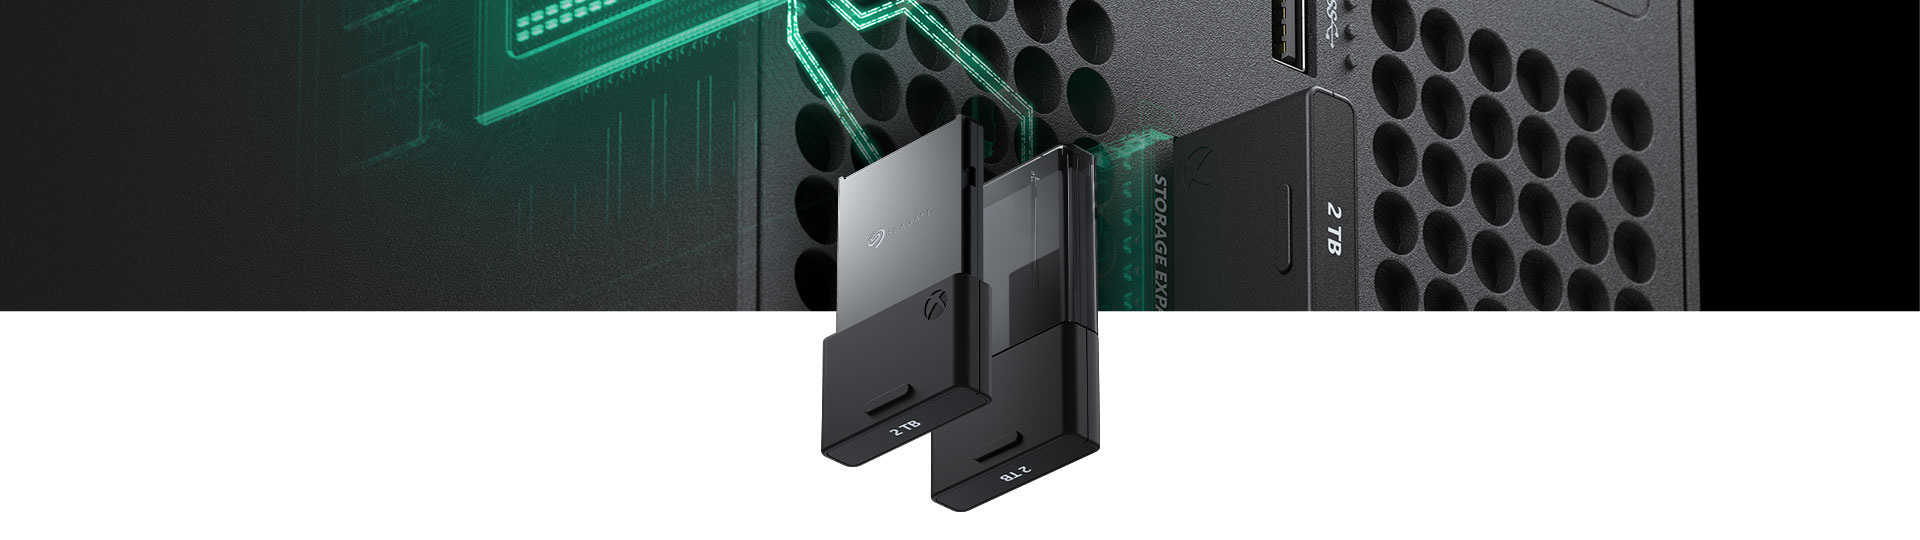 Közeli kép az 2 terabájtos Seagate bővítőkártyáról Xbox Series X konzolhoz, amely be van helyezve egy Xbox Series X konzolba